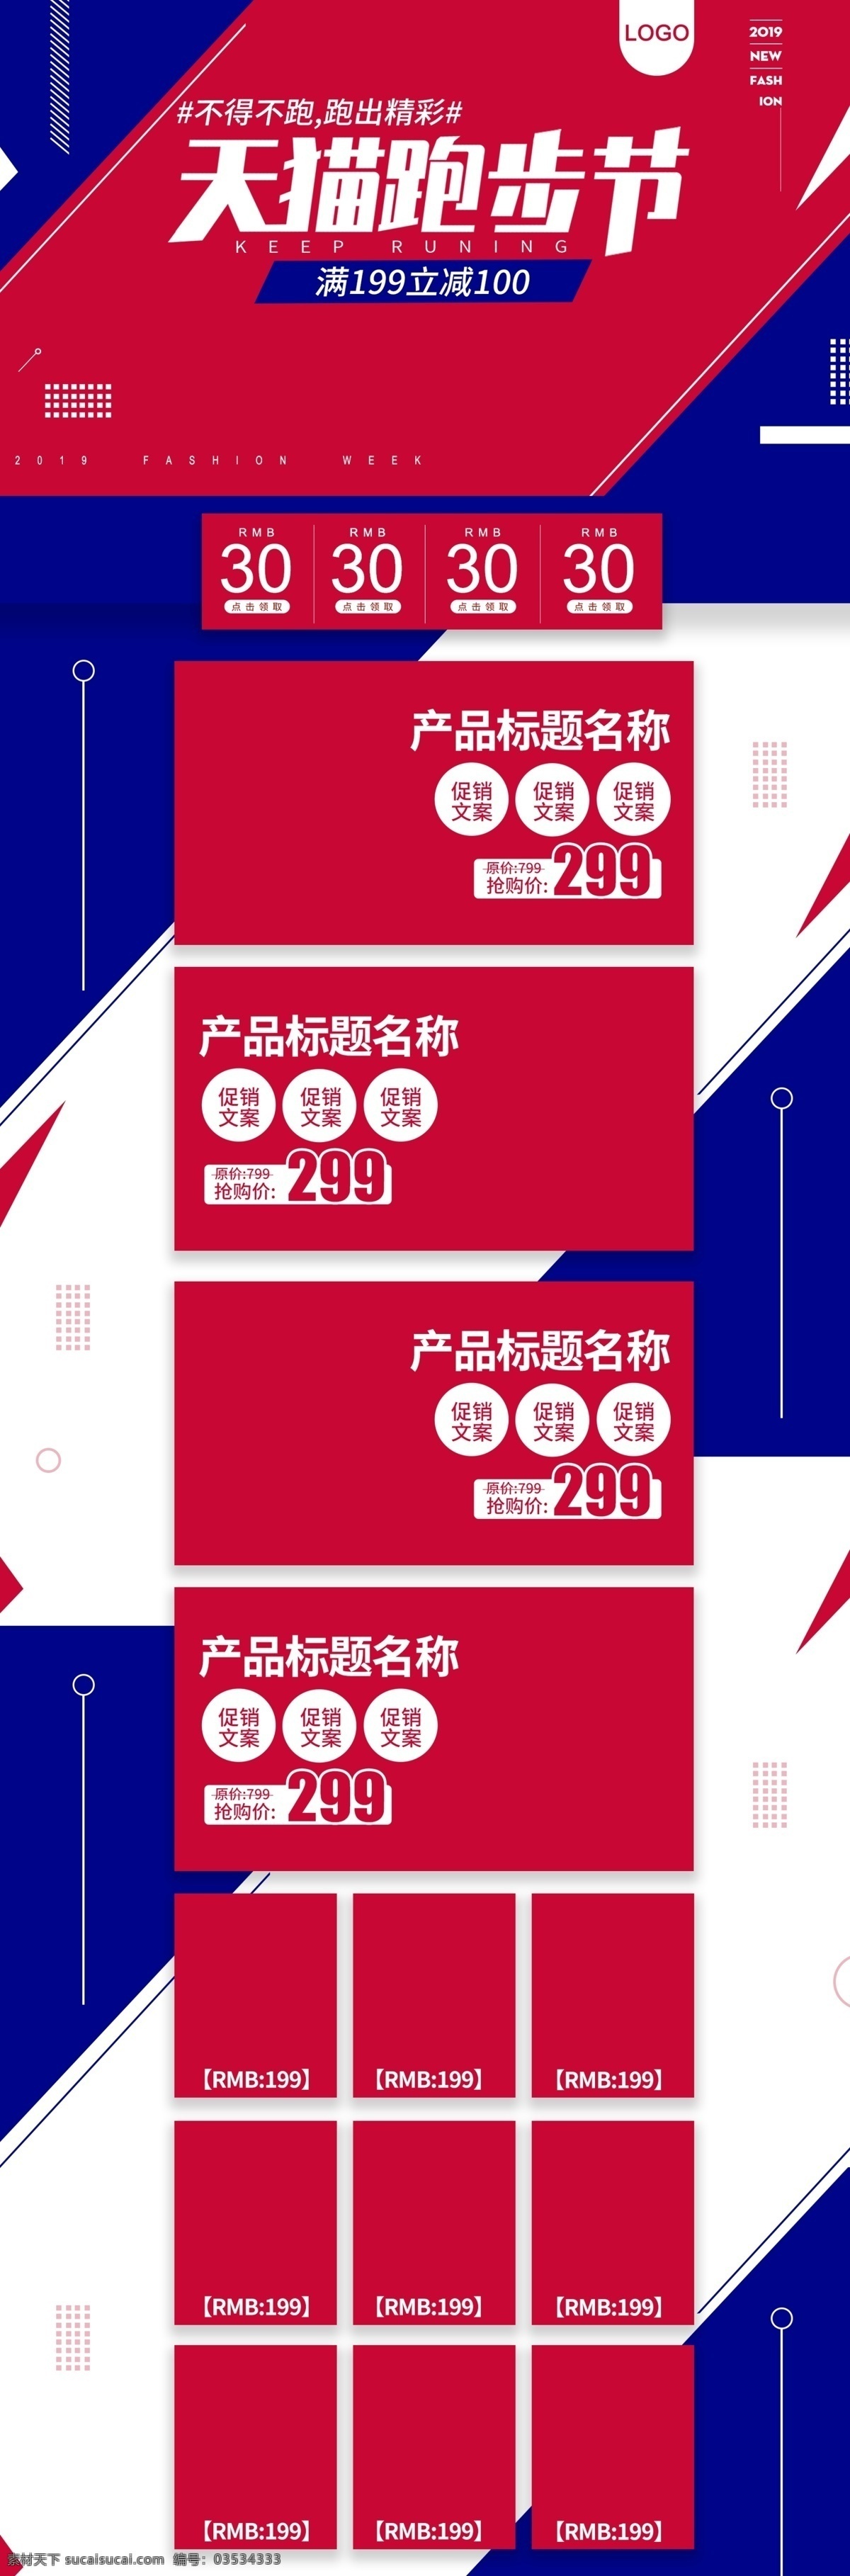 红蓝 天猫 跑步 节 简约 时尚 电商 首页 模板 促销 大气 淘宝 活动